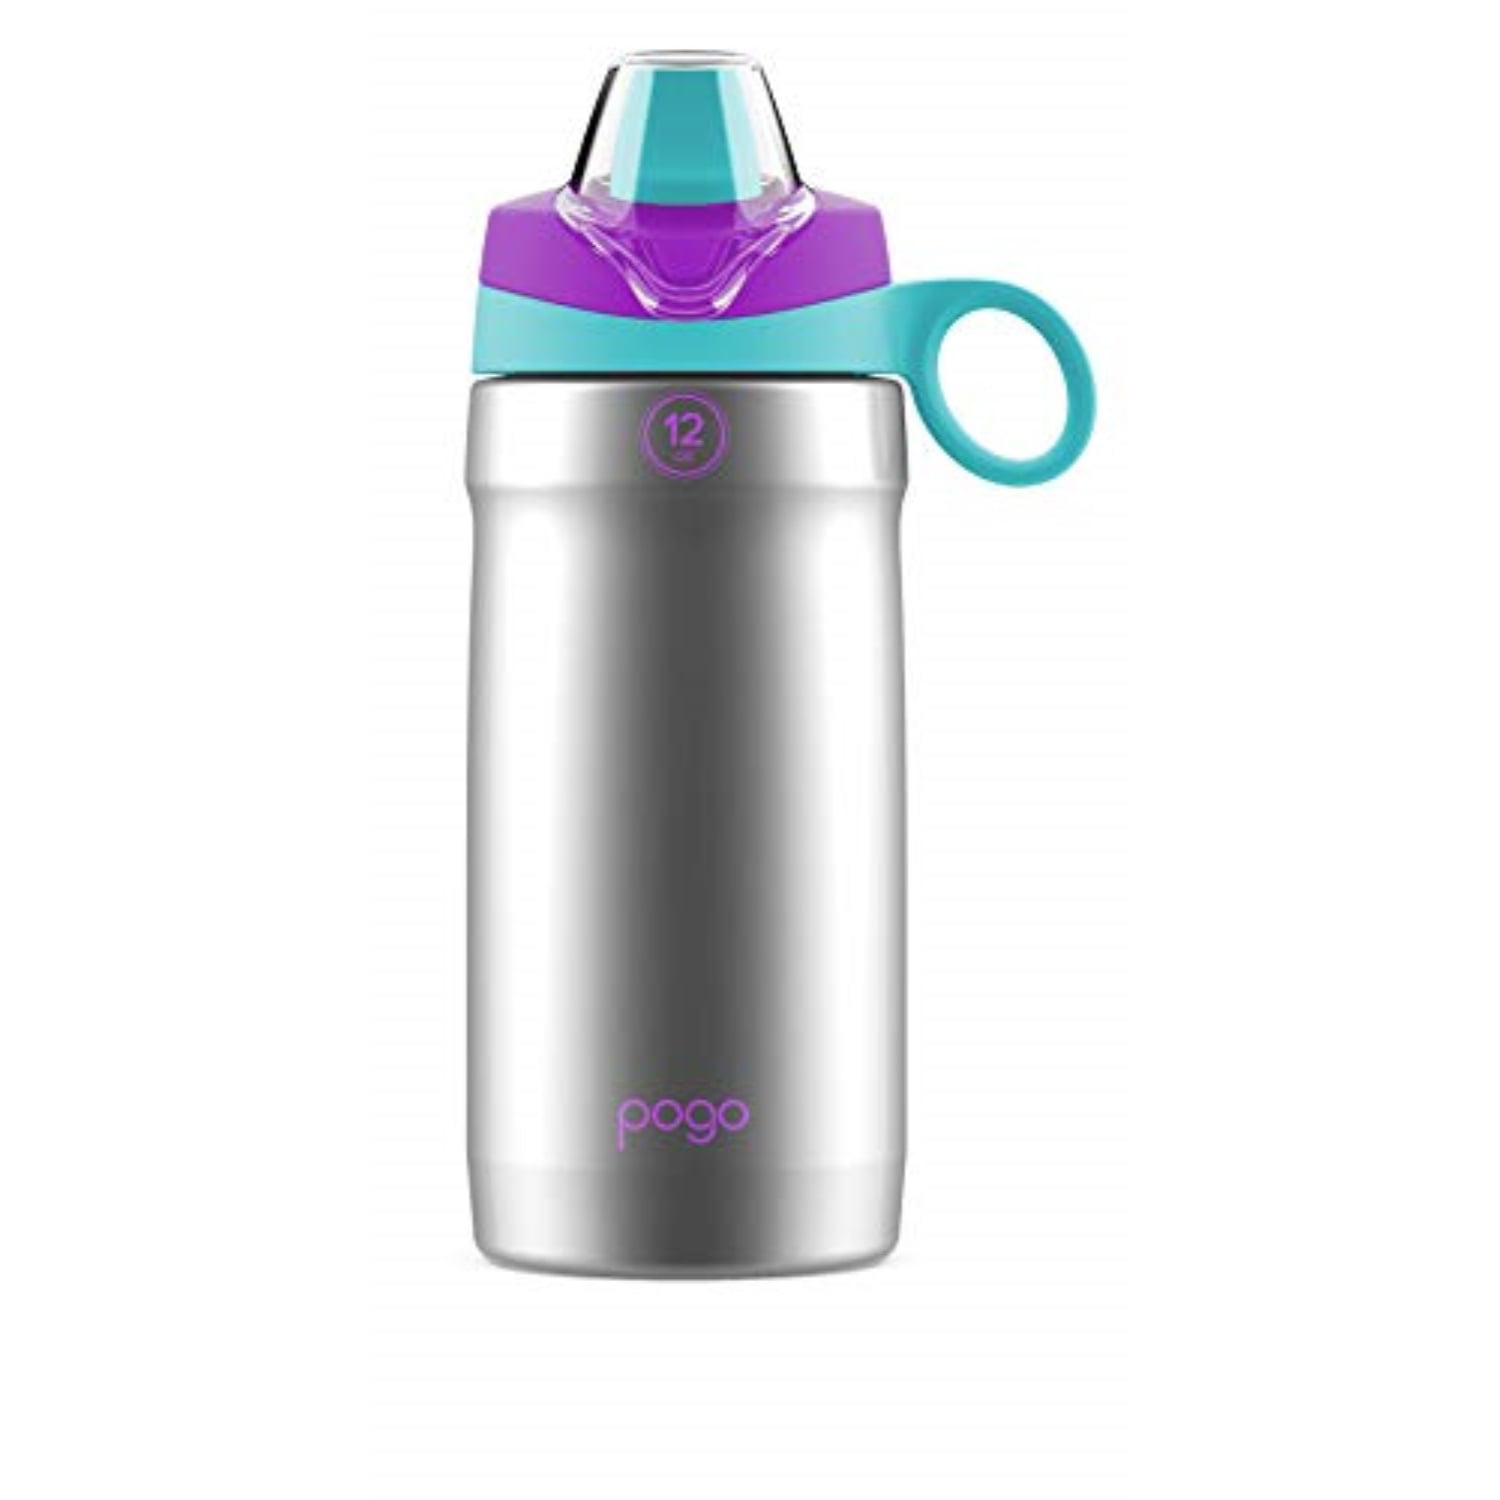 pogo 12oz stainless steel water bottle (mint/purple) - Walmart.com Pogo Water Bottle Stainless Steel